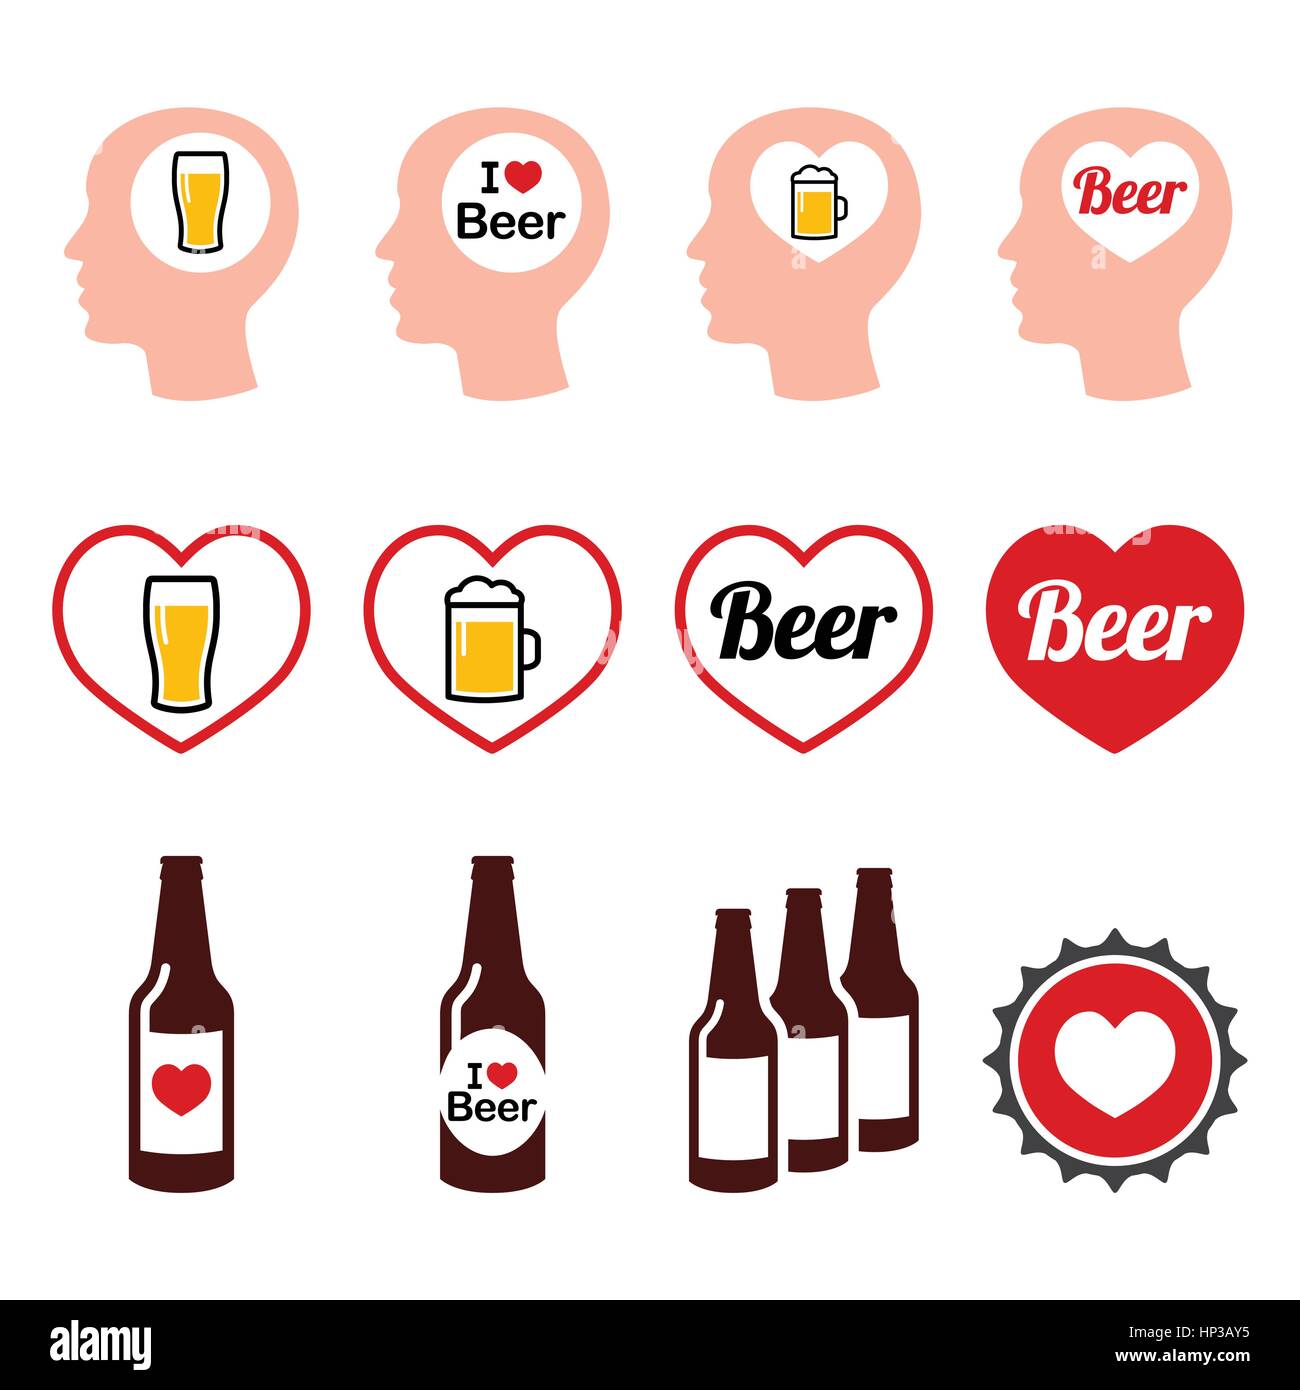 Aimer l'homme beer vector icons set. J'aime boire de la bière icons set isolated on white Illustration de Vecteur